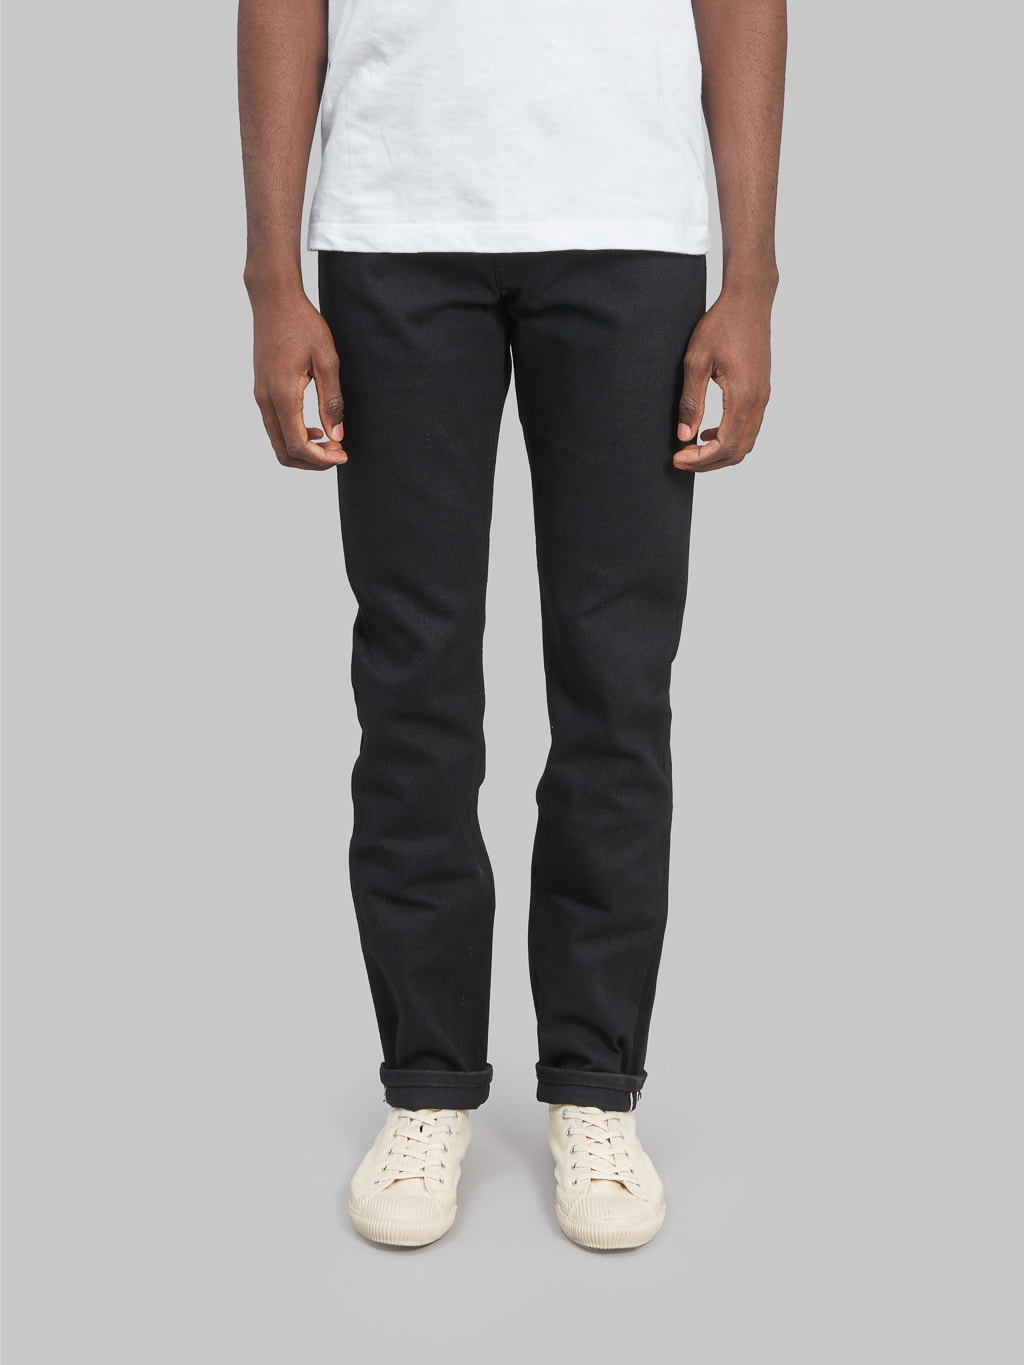 Freenote Cloth Avila 17oz Black Denim Slim Taper Jeans front